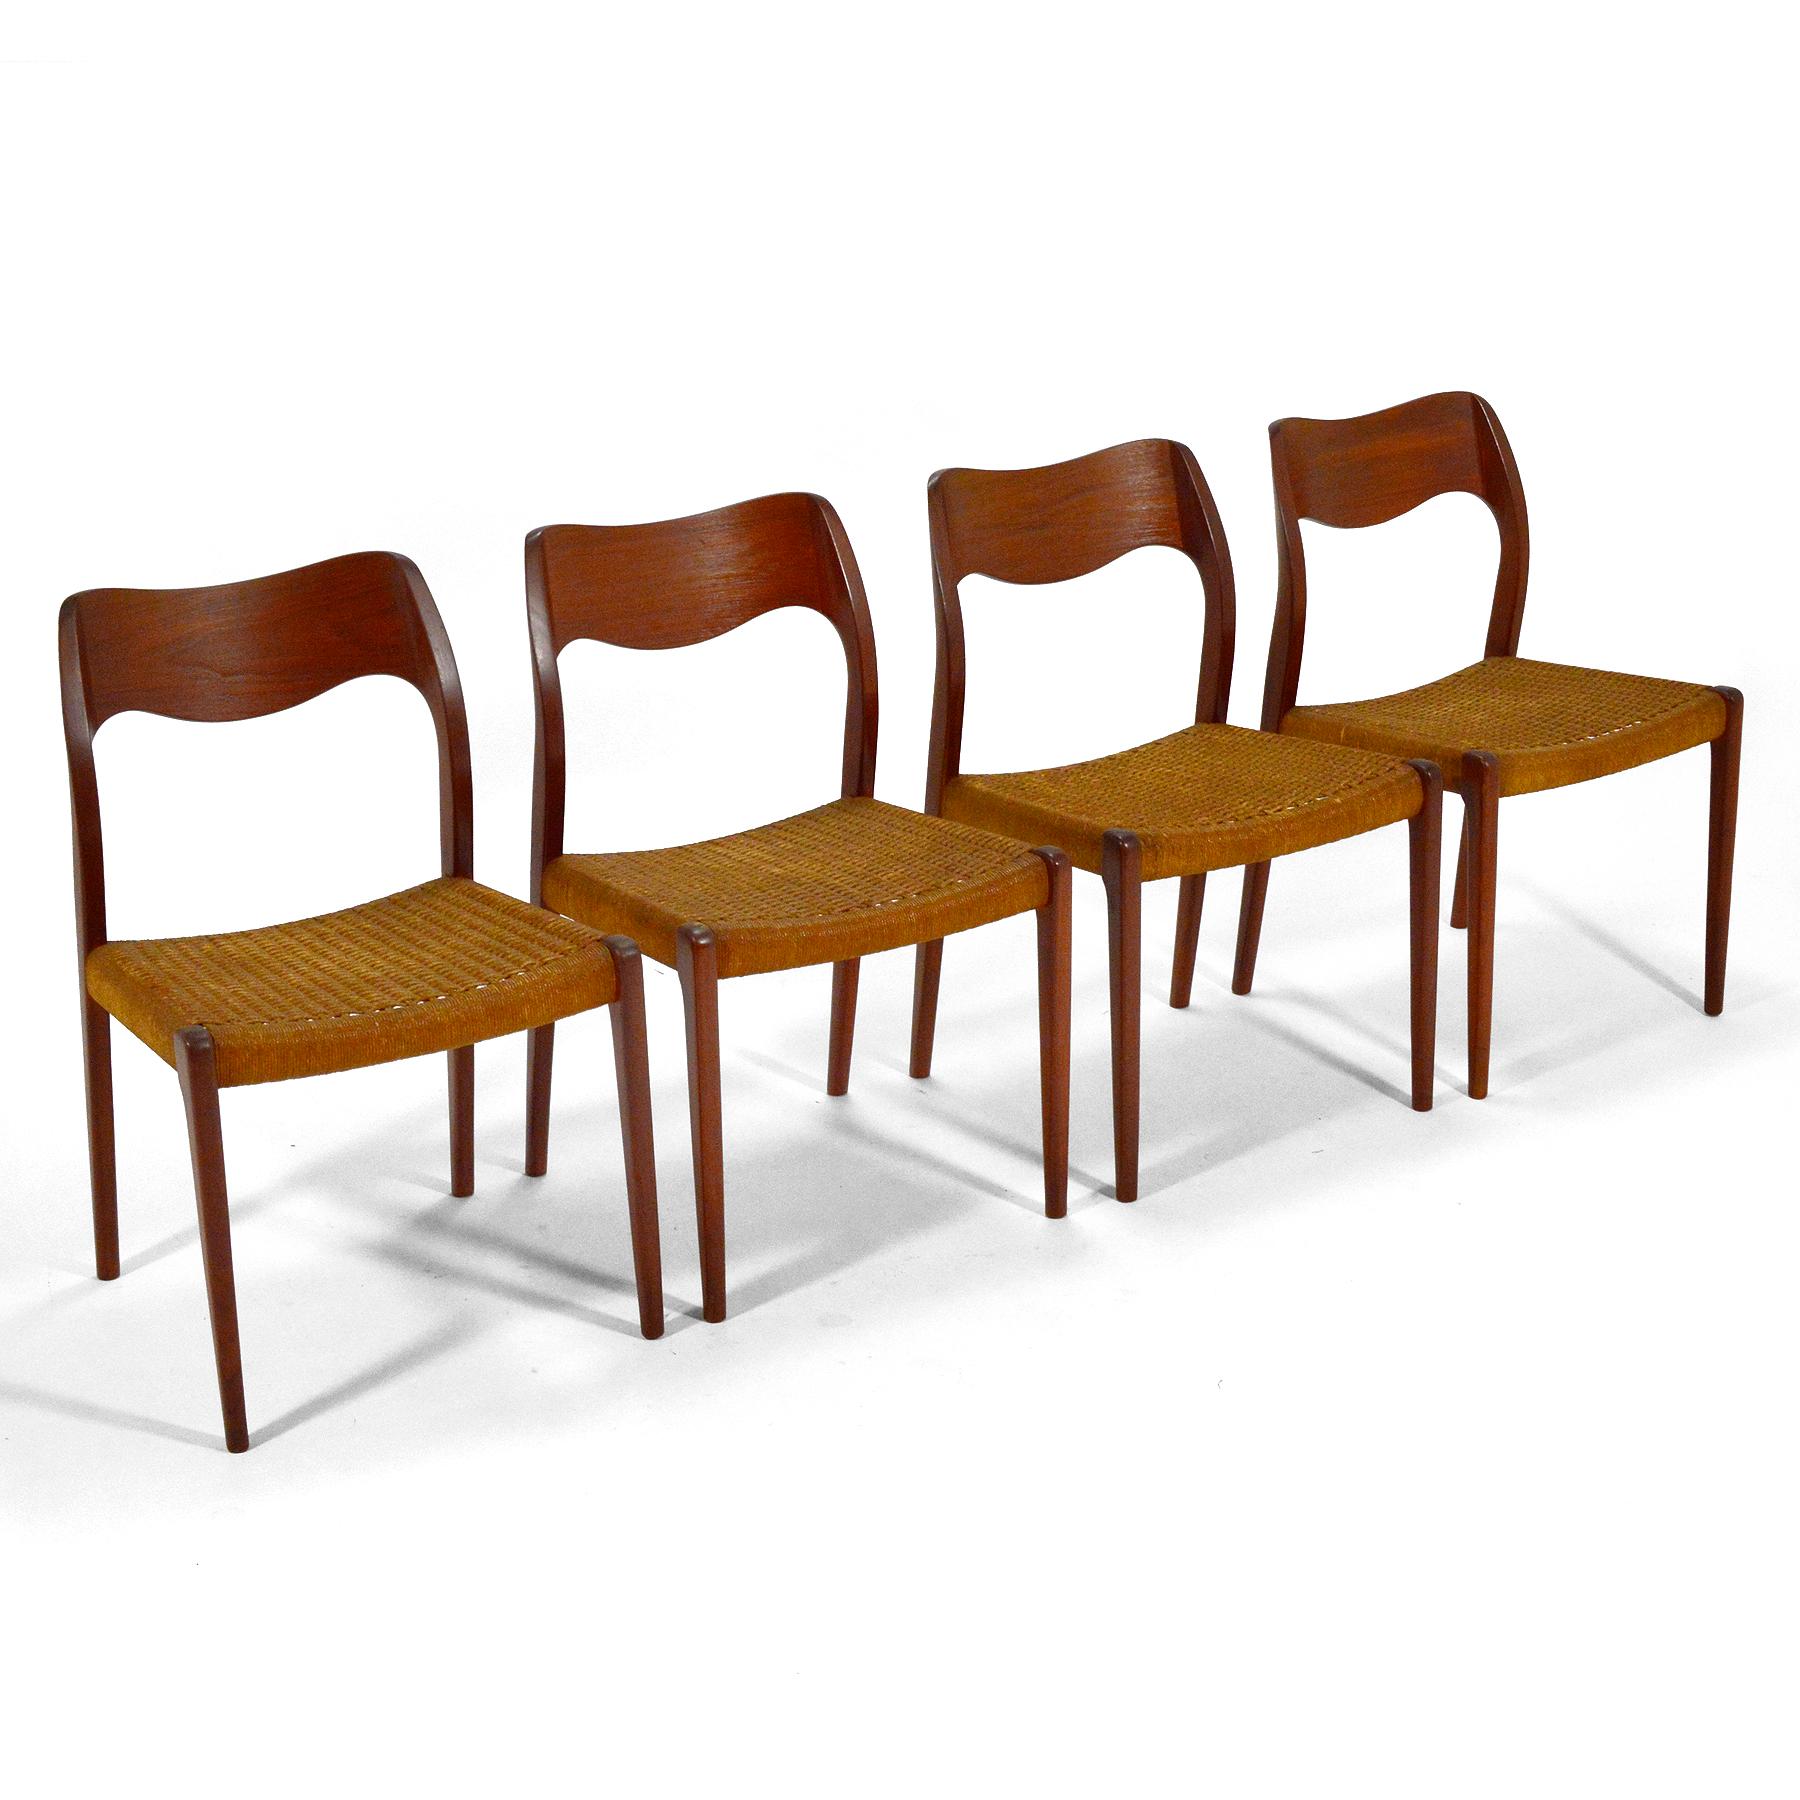 Un bel ensemble de quatre chaises de salle à manger modèle 71 conçu par Niels O. Møller et fabriqué par J.L. Møllers Møbelfabrik. Les cadres sculpturaux en teck et les sièges en cordon de papier tissé ont une belle patine due à des années d'âge et